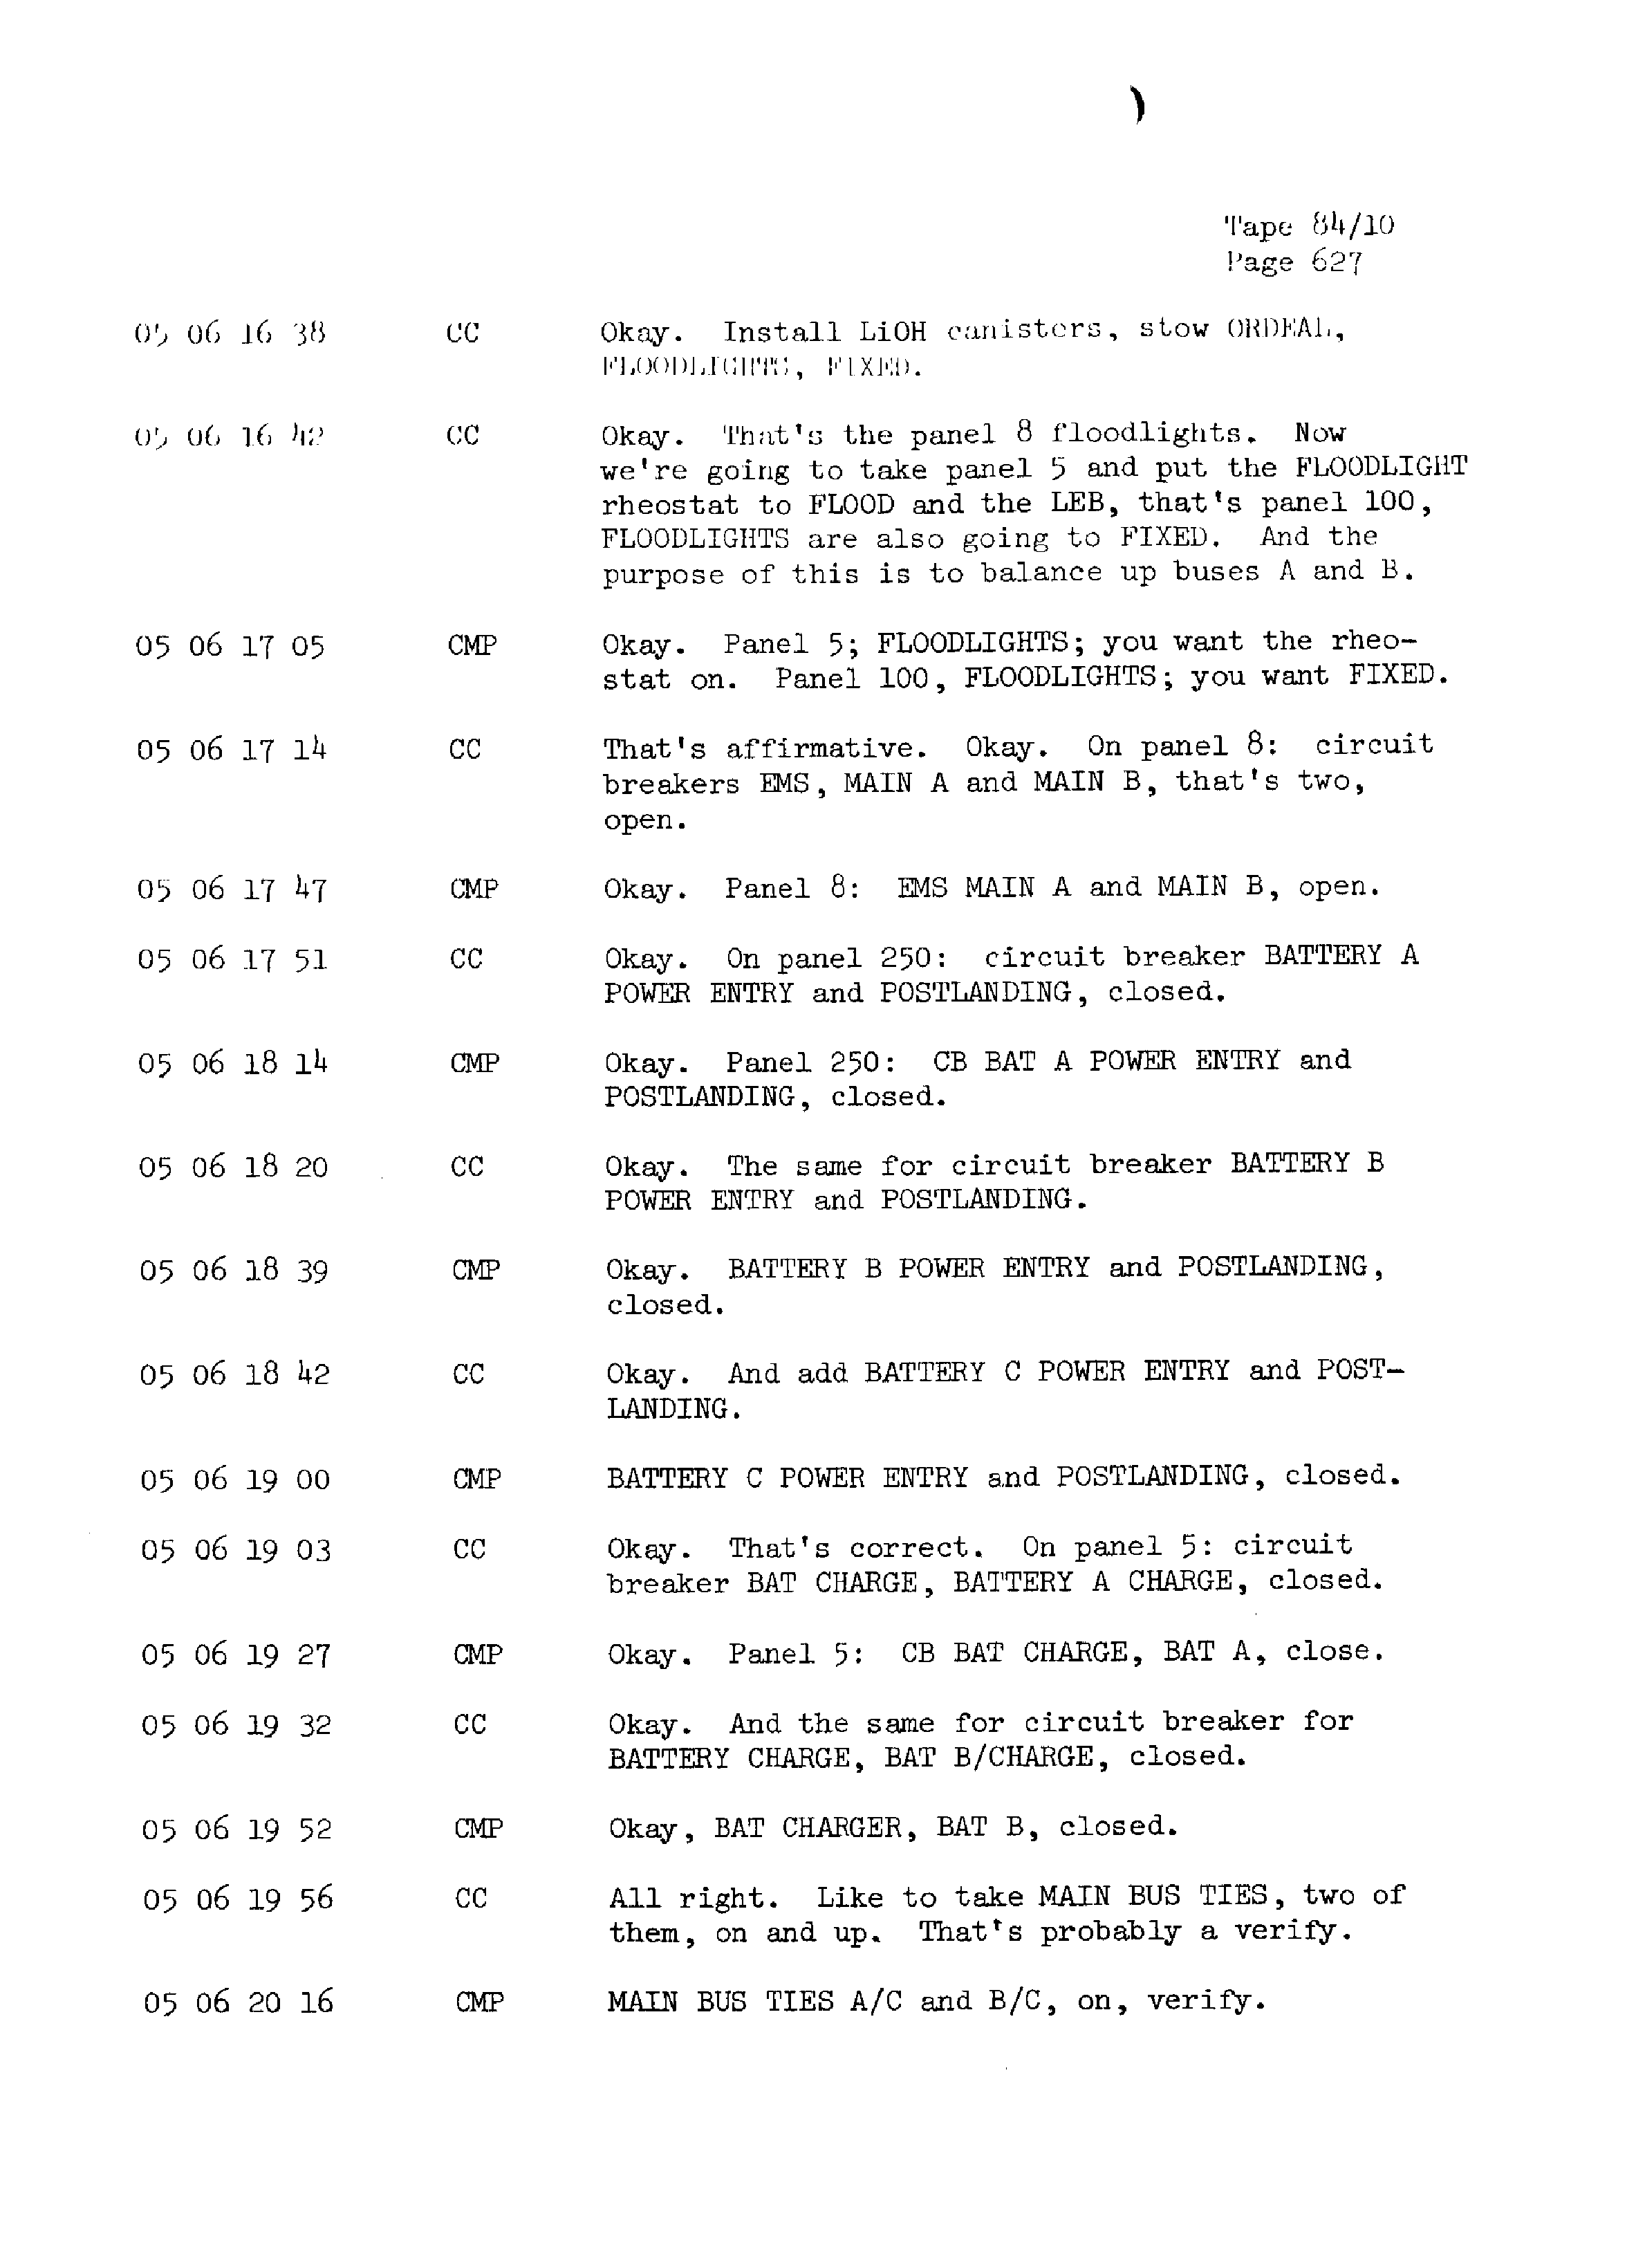 Page 634 of Apollo 13’s original transcript